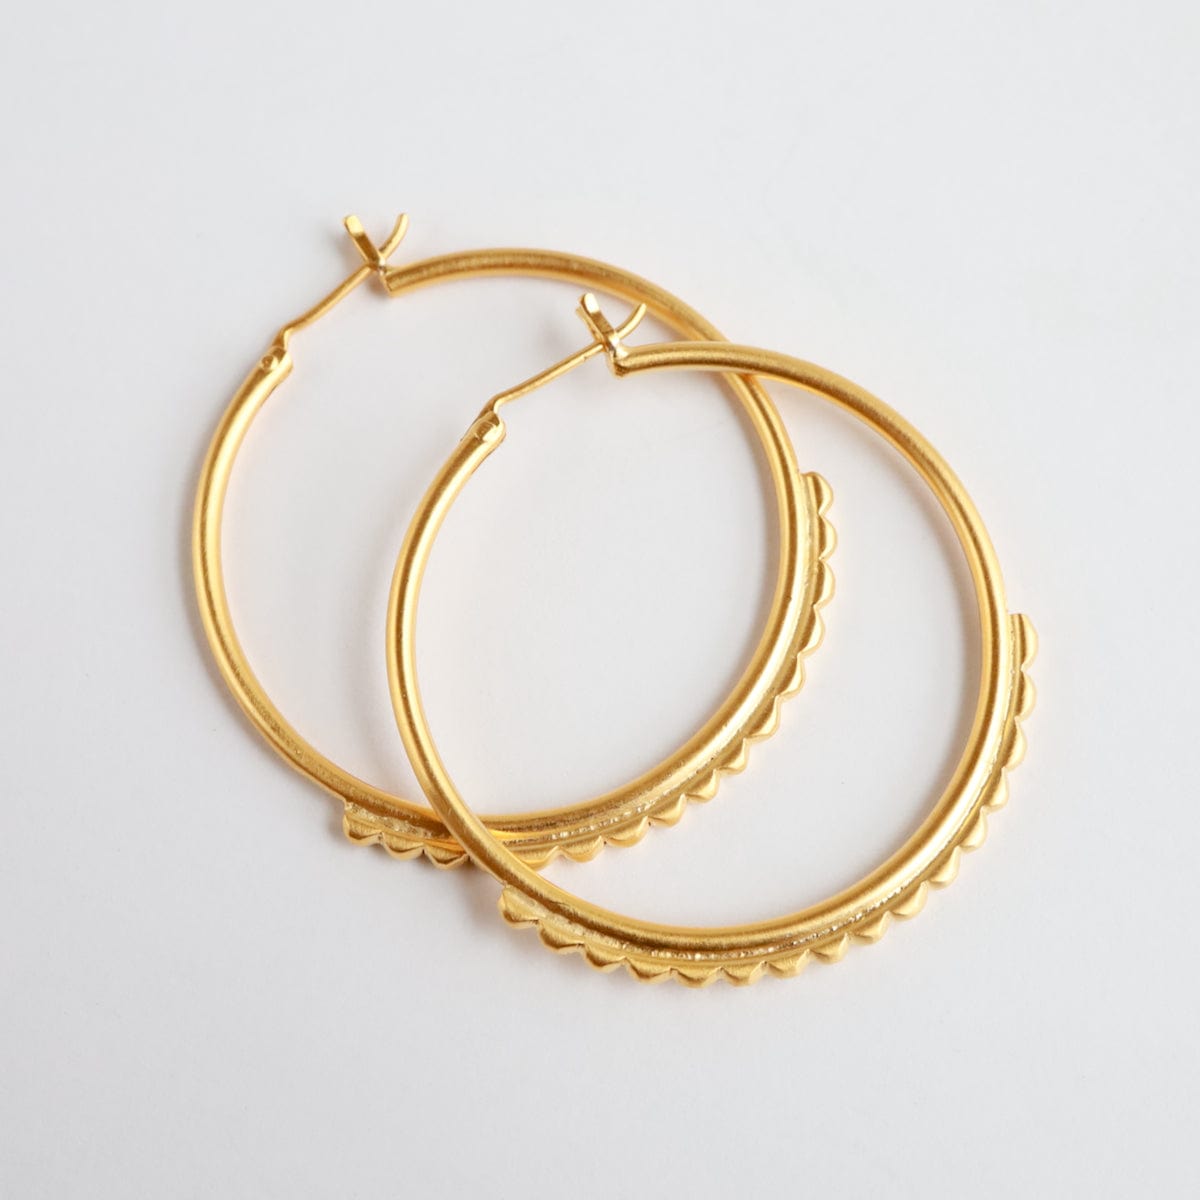 EAR-GPL Gold Plated Large Tuareg Inspired Hoop Earrings